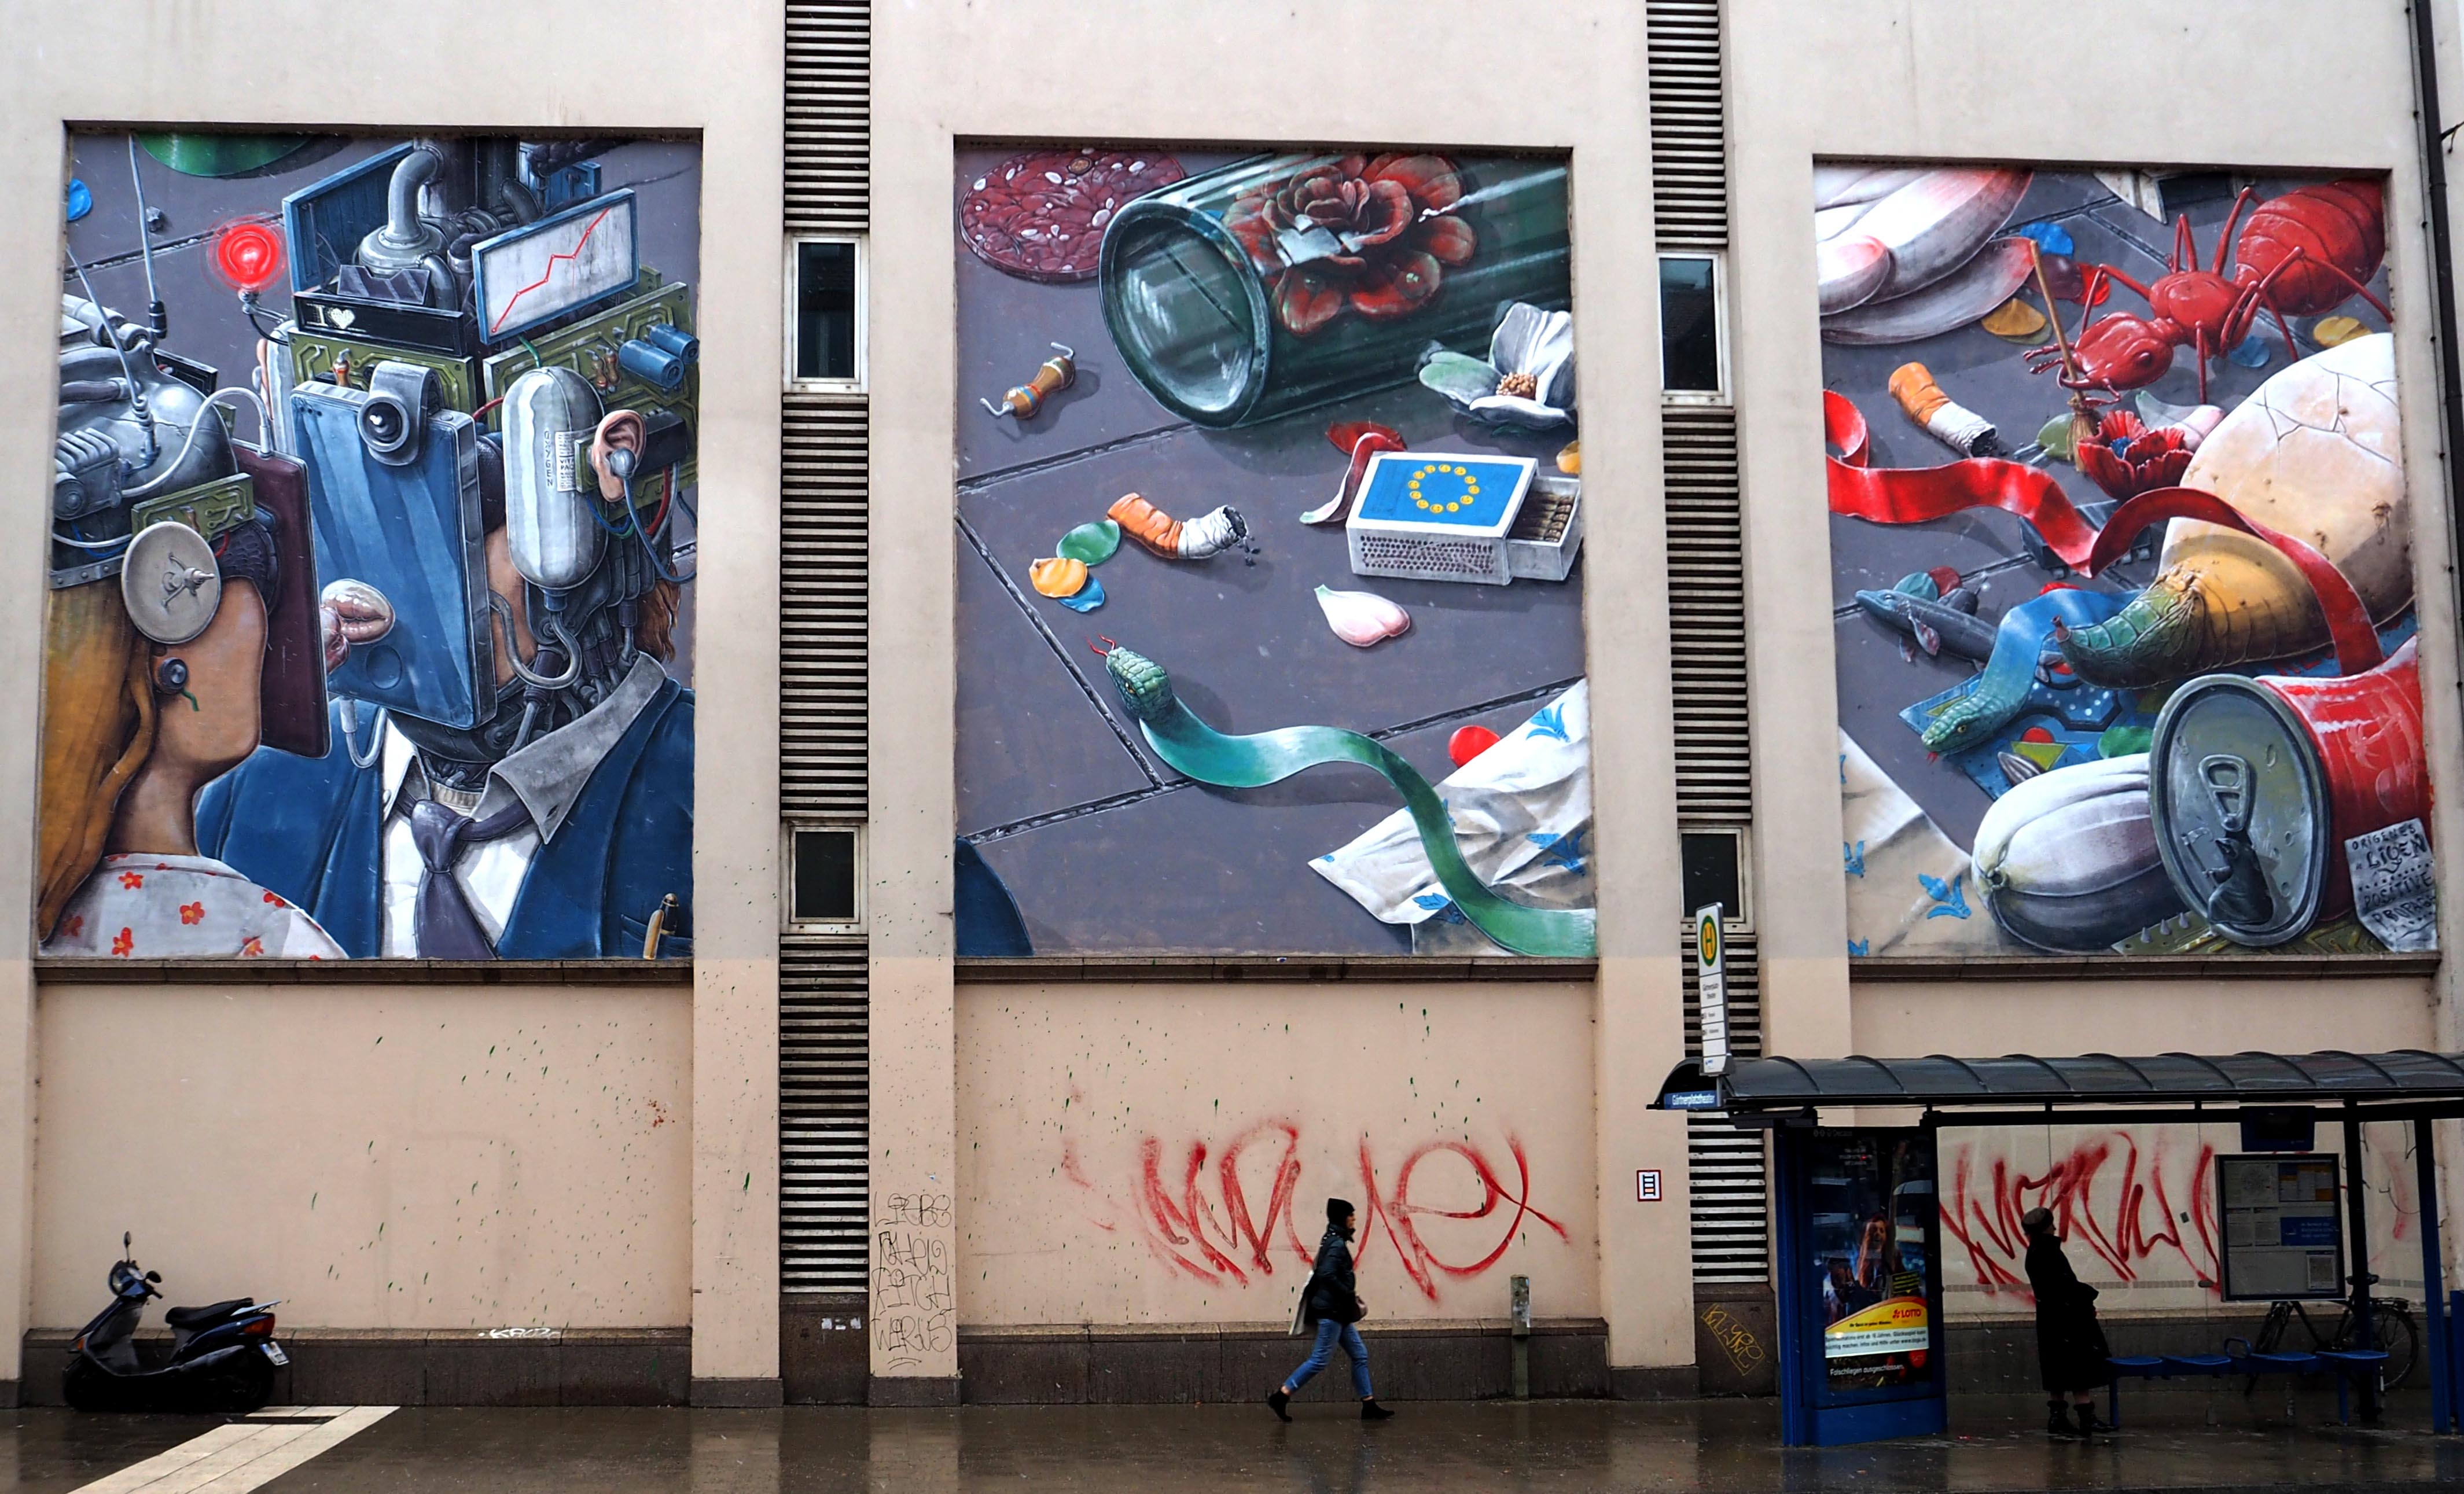 vor einer Bushaltestelle finden sich drei große Murals die die Dekadenz der Gesellschaft darstellen soll